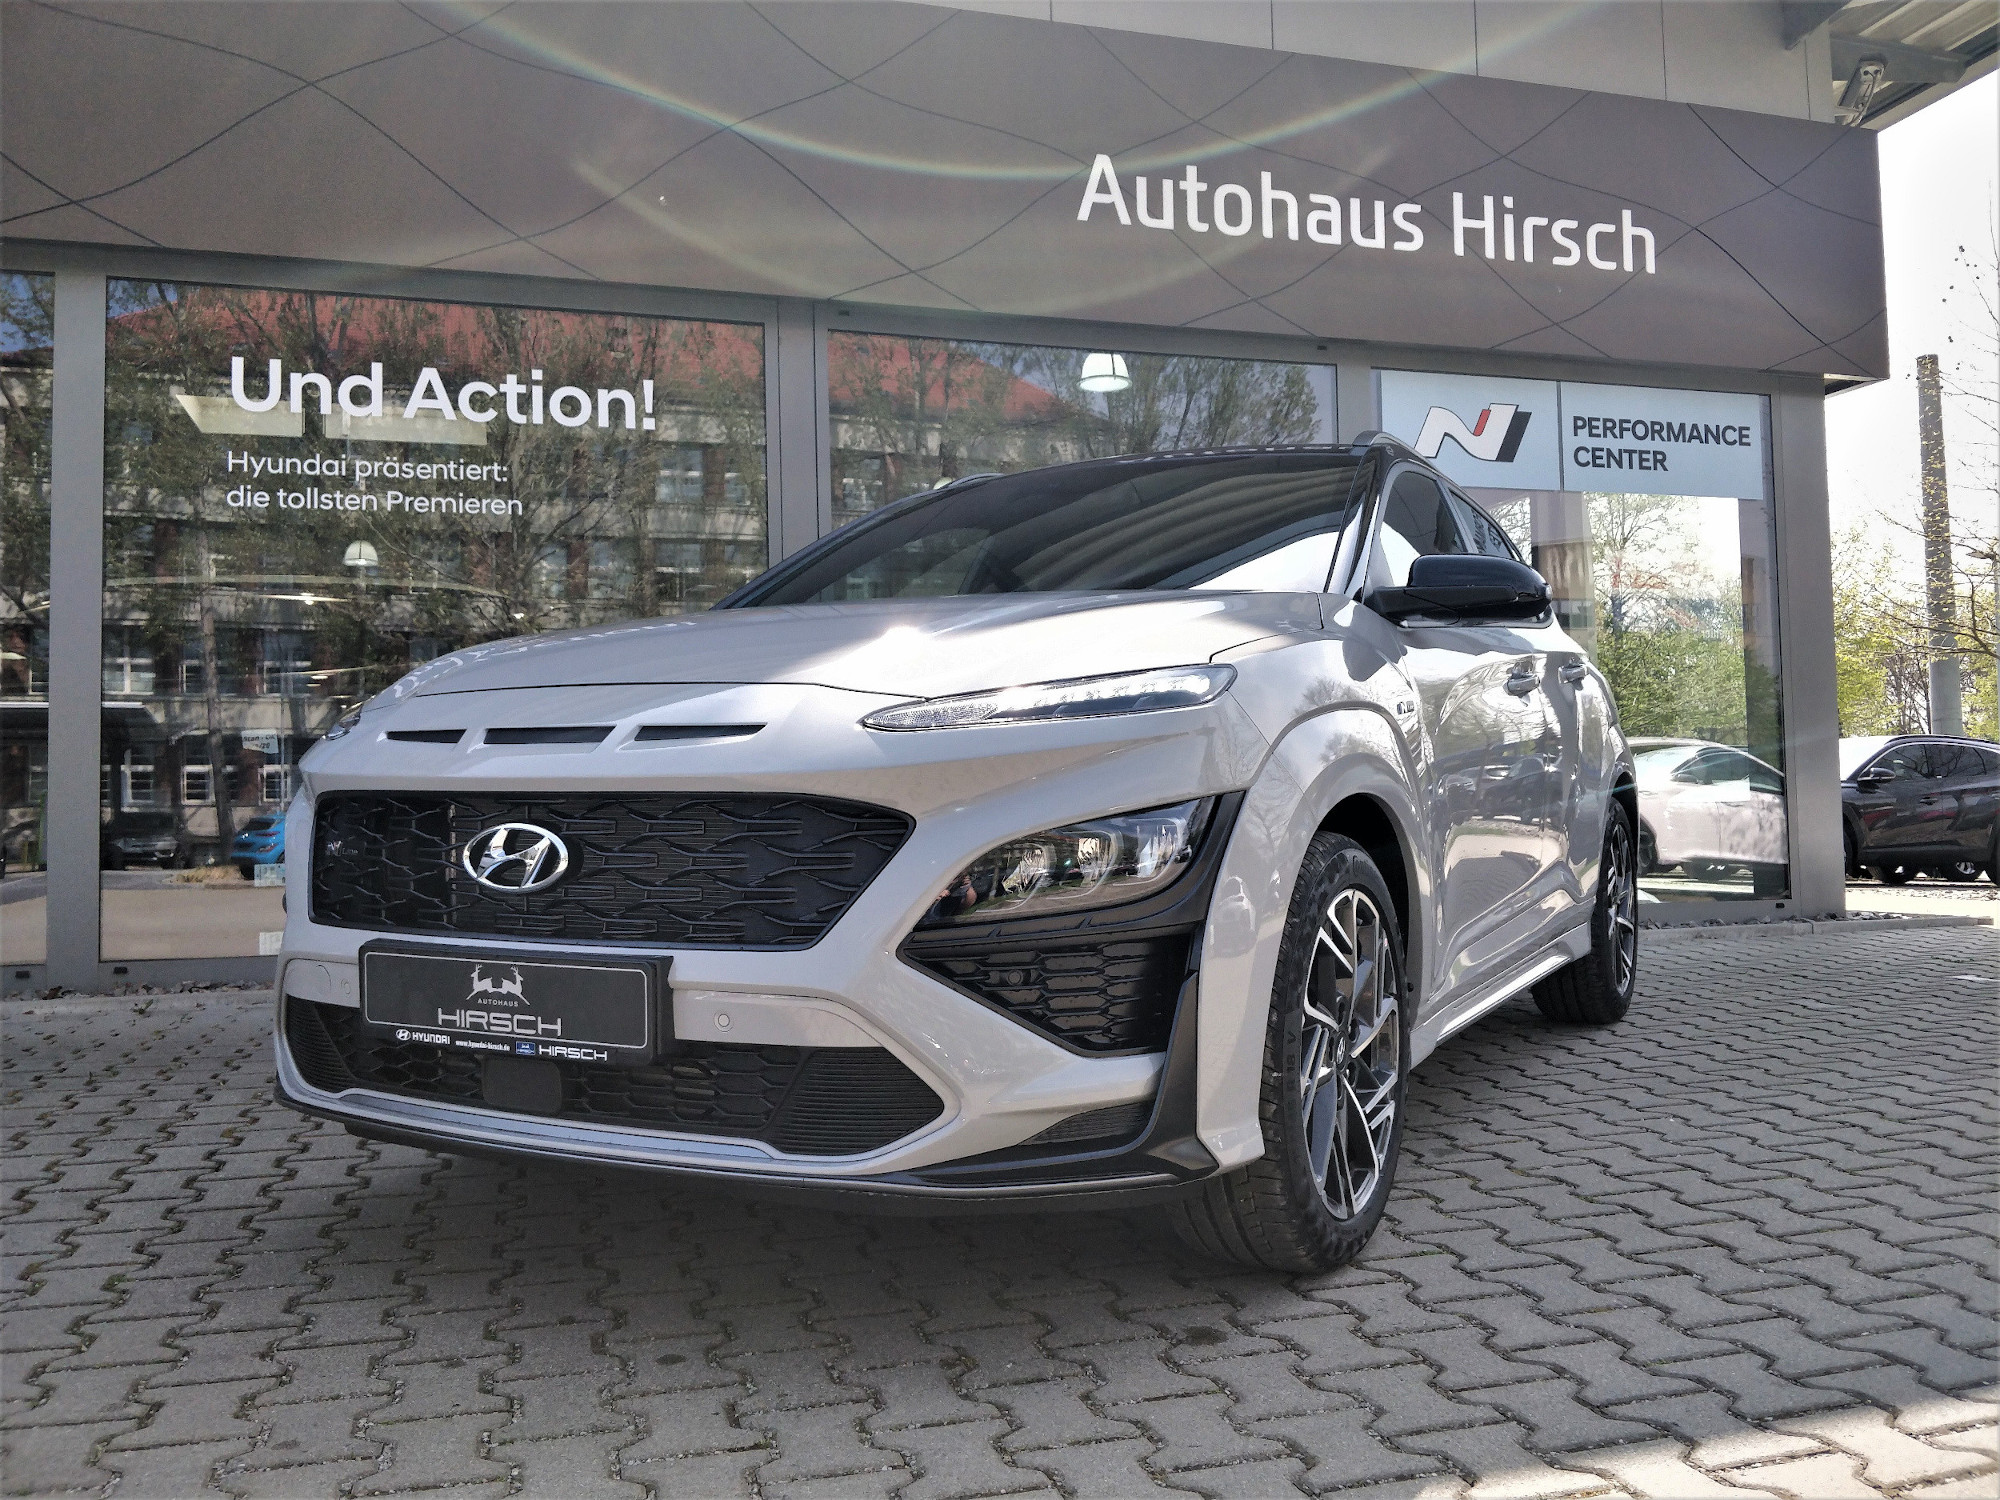 Der Hyndai KONA Hybrid Leasingangebot Hyundai Autohaus Hirsch Chemnitz